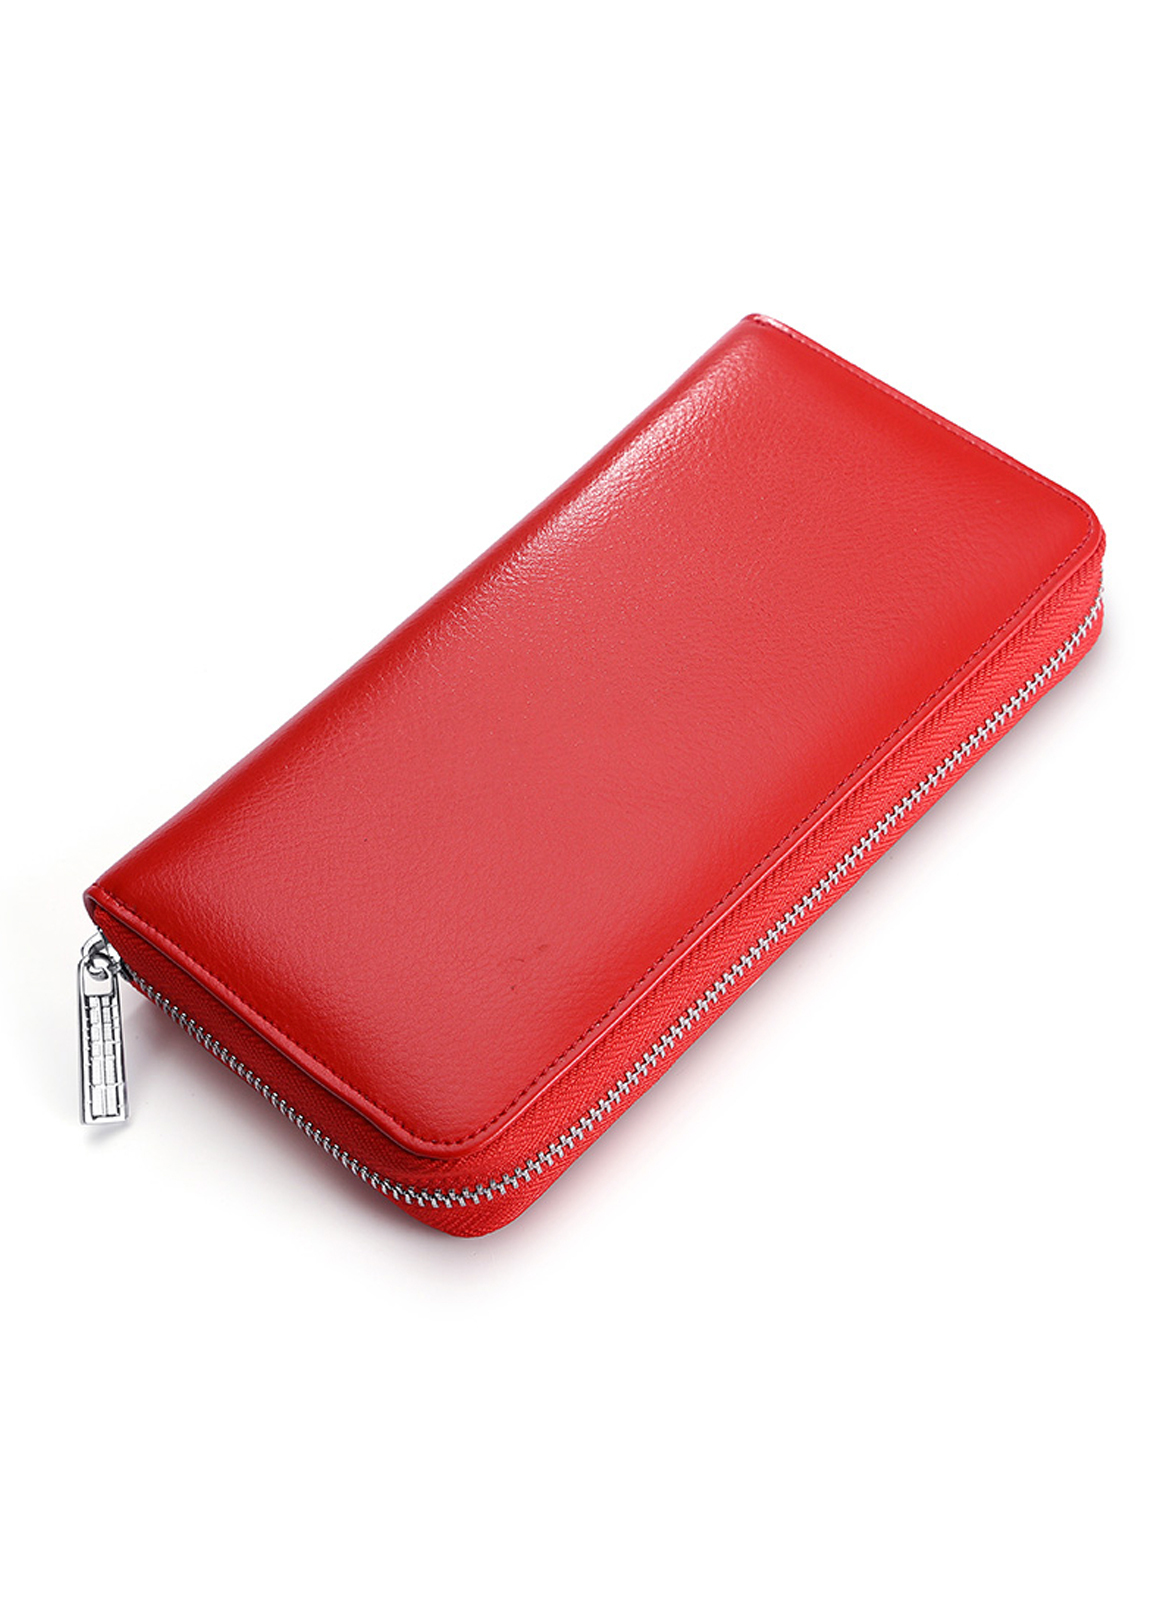 Genuine Soft Leather Wallet Red Card Holder Large - Tamboril